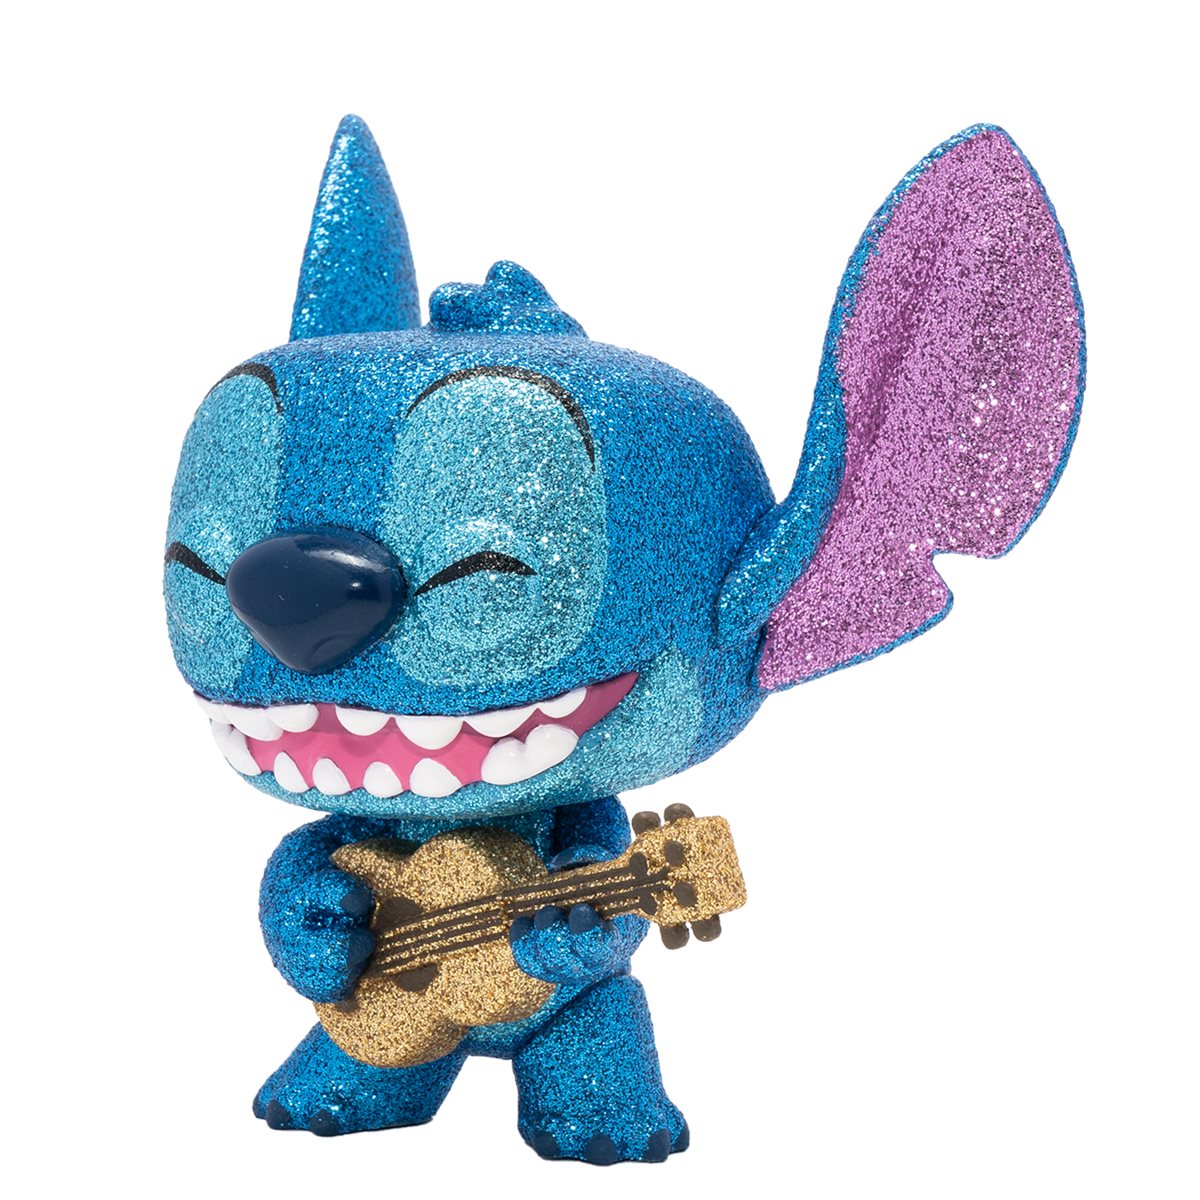 Lilo & Stitch Stitch Premium Dice Set - Entertainment Earth